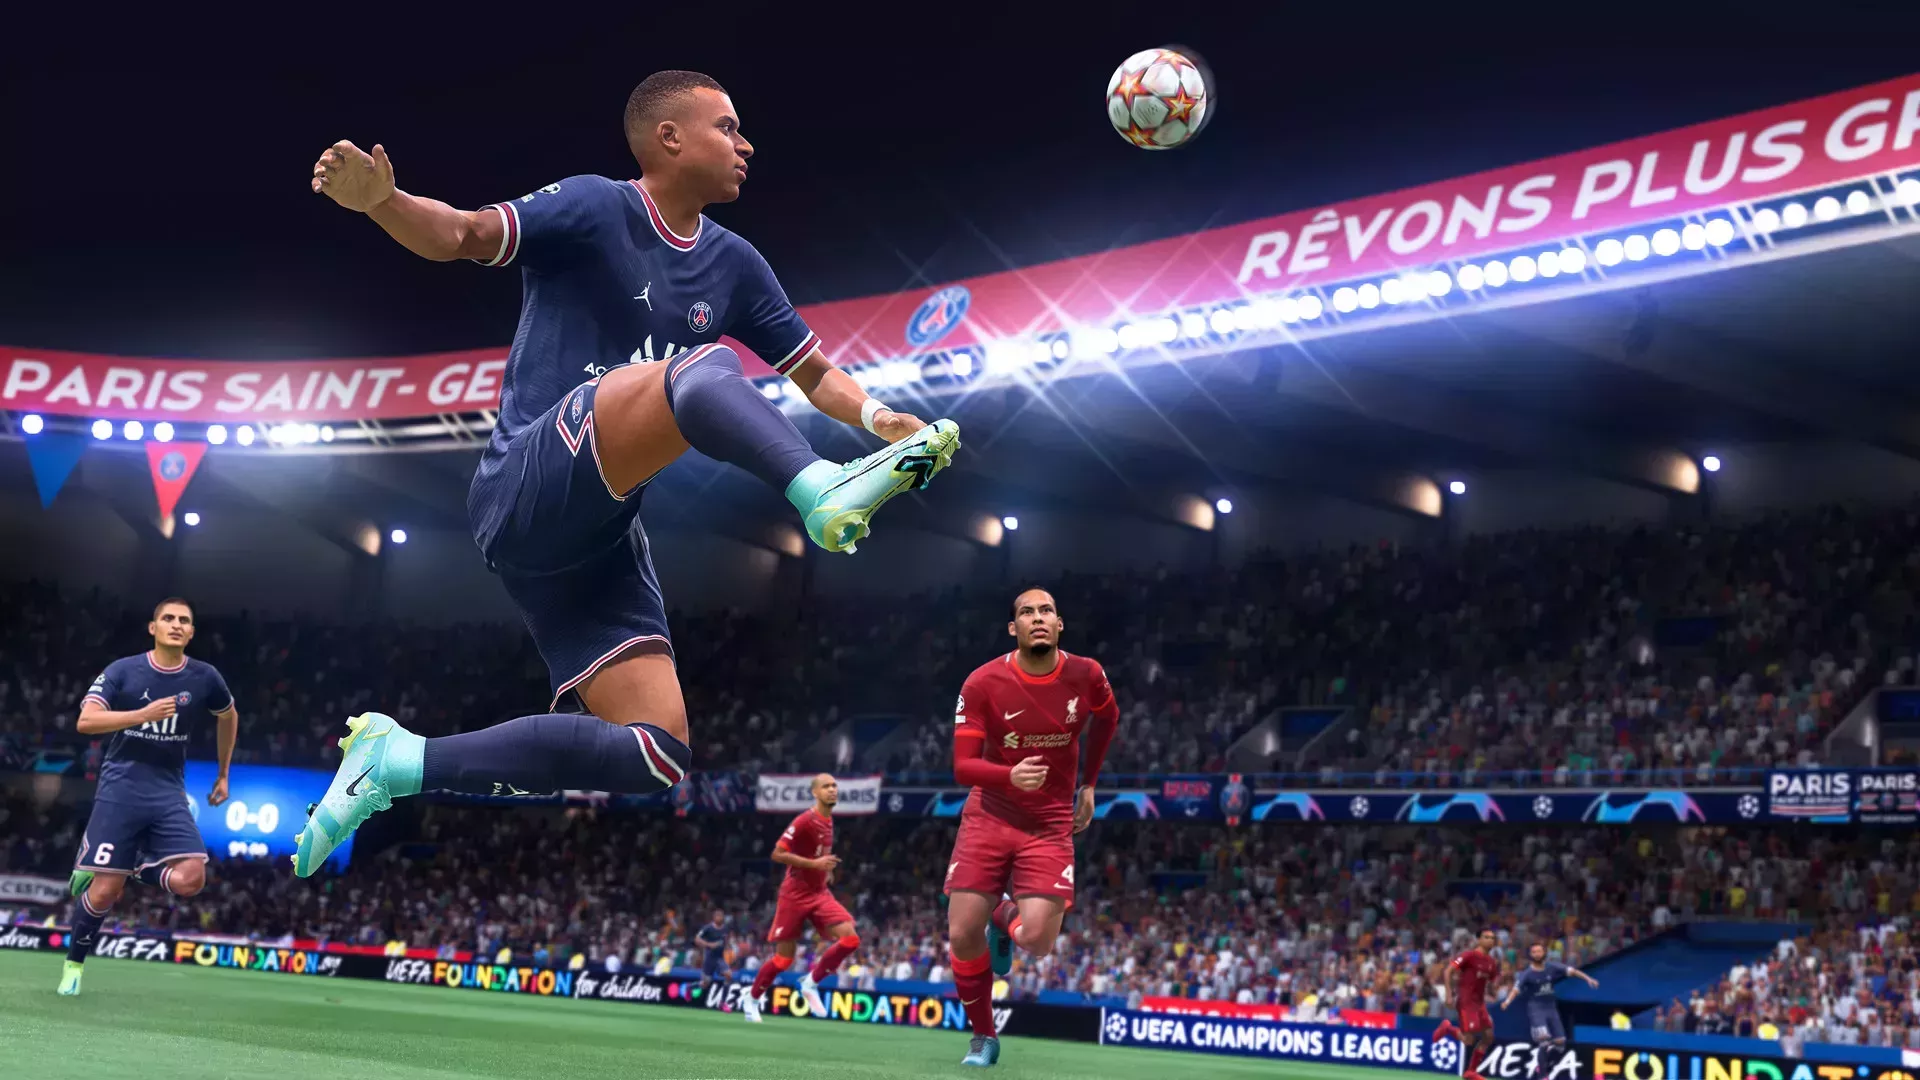 La actualización de FIFA 22 introduce cambios en los tiros de nudillos, añade un nuevo movimiento de habilidad y mucho más